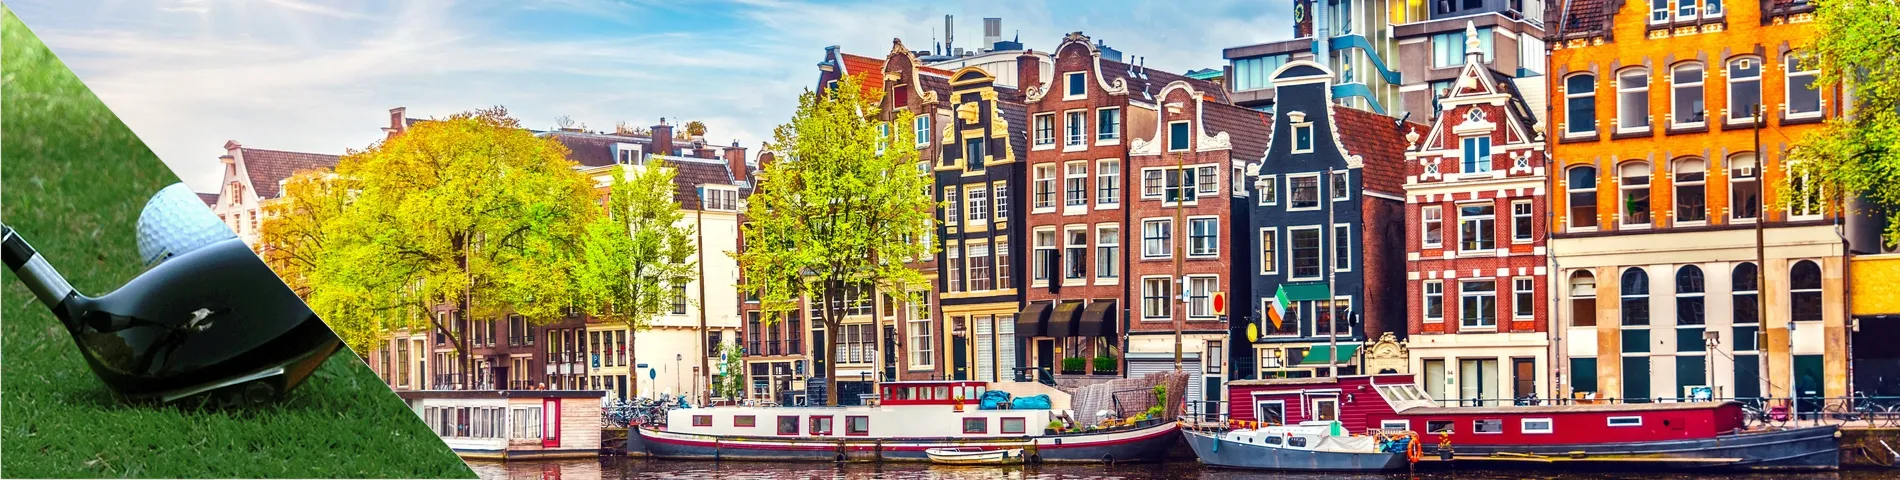 Amsterdam - Nederlands & golfen 